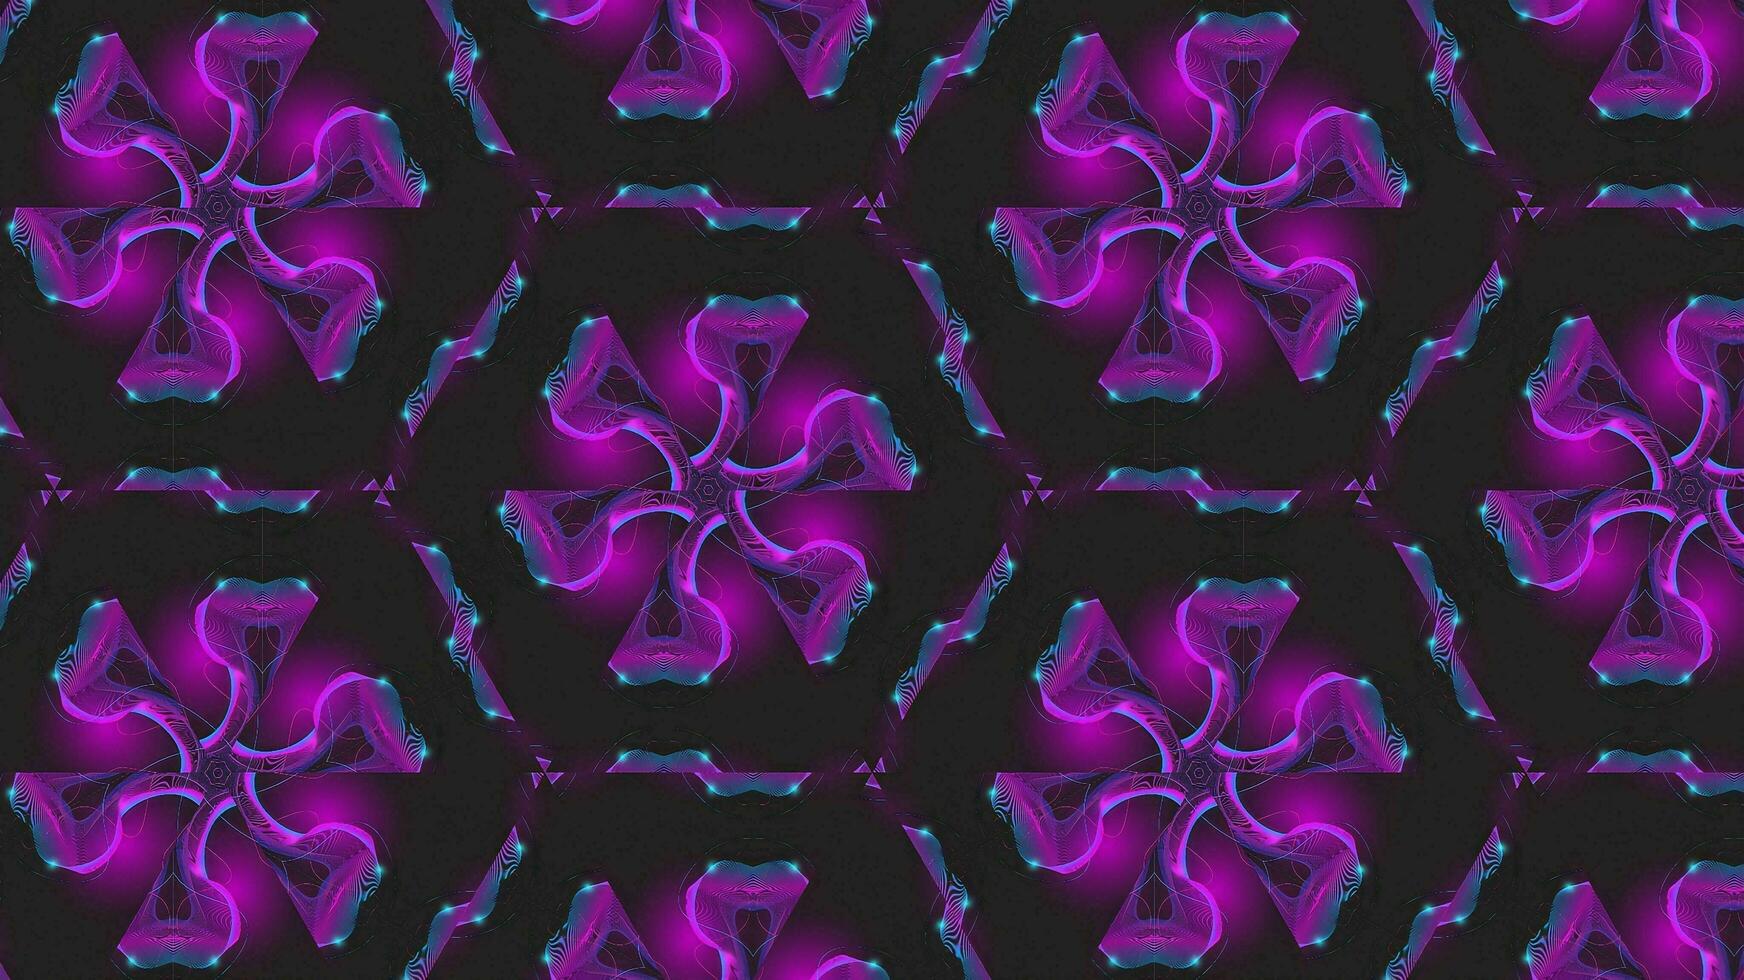 abstrakt bunt nahtlos Muster Kaleidoskop foto